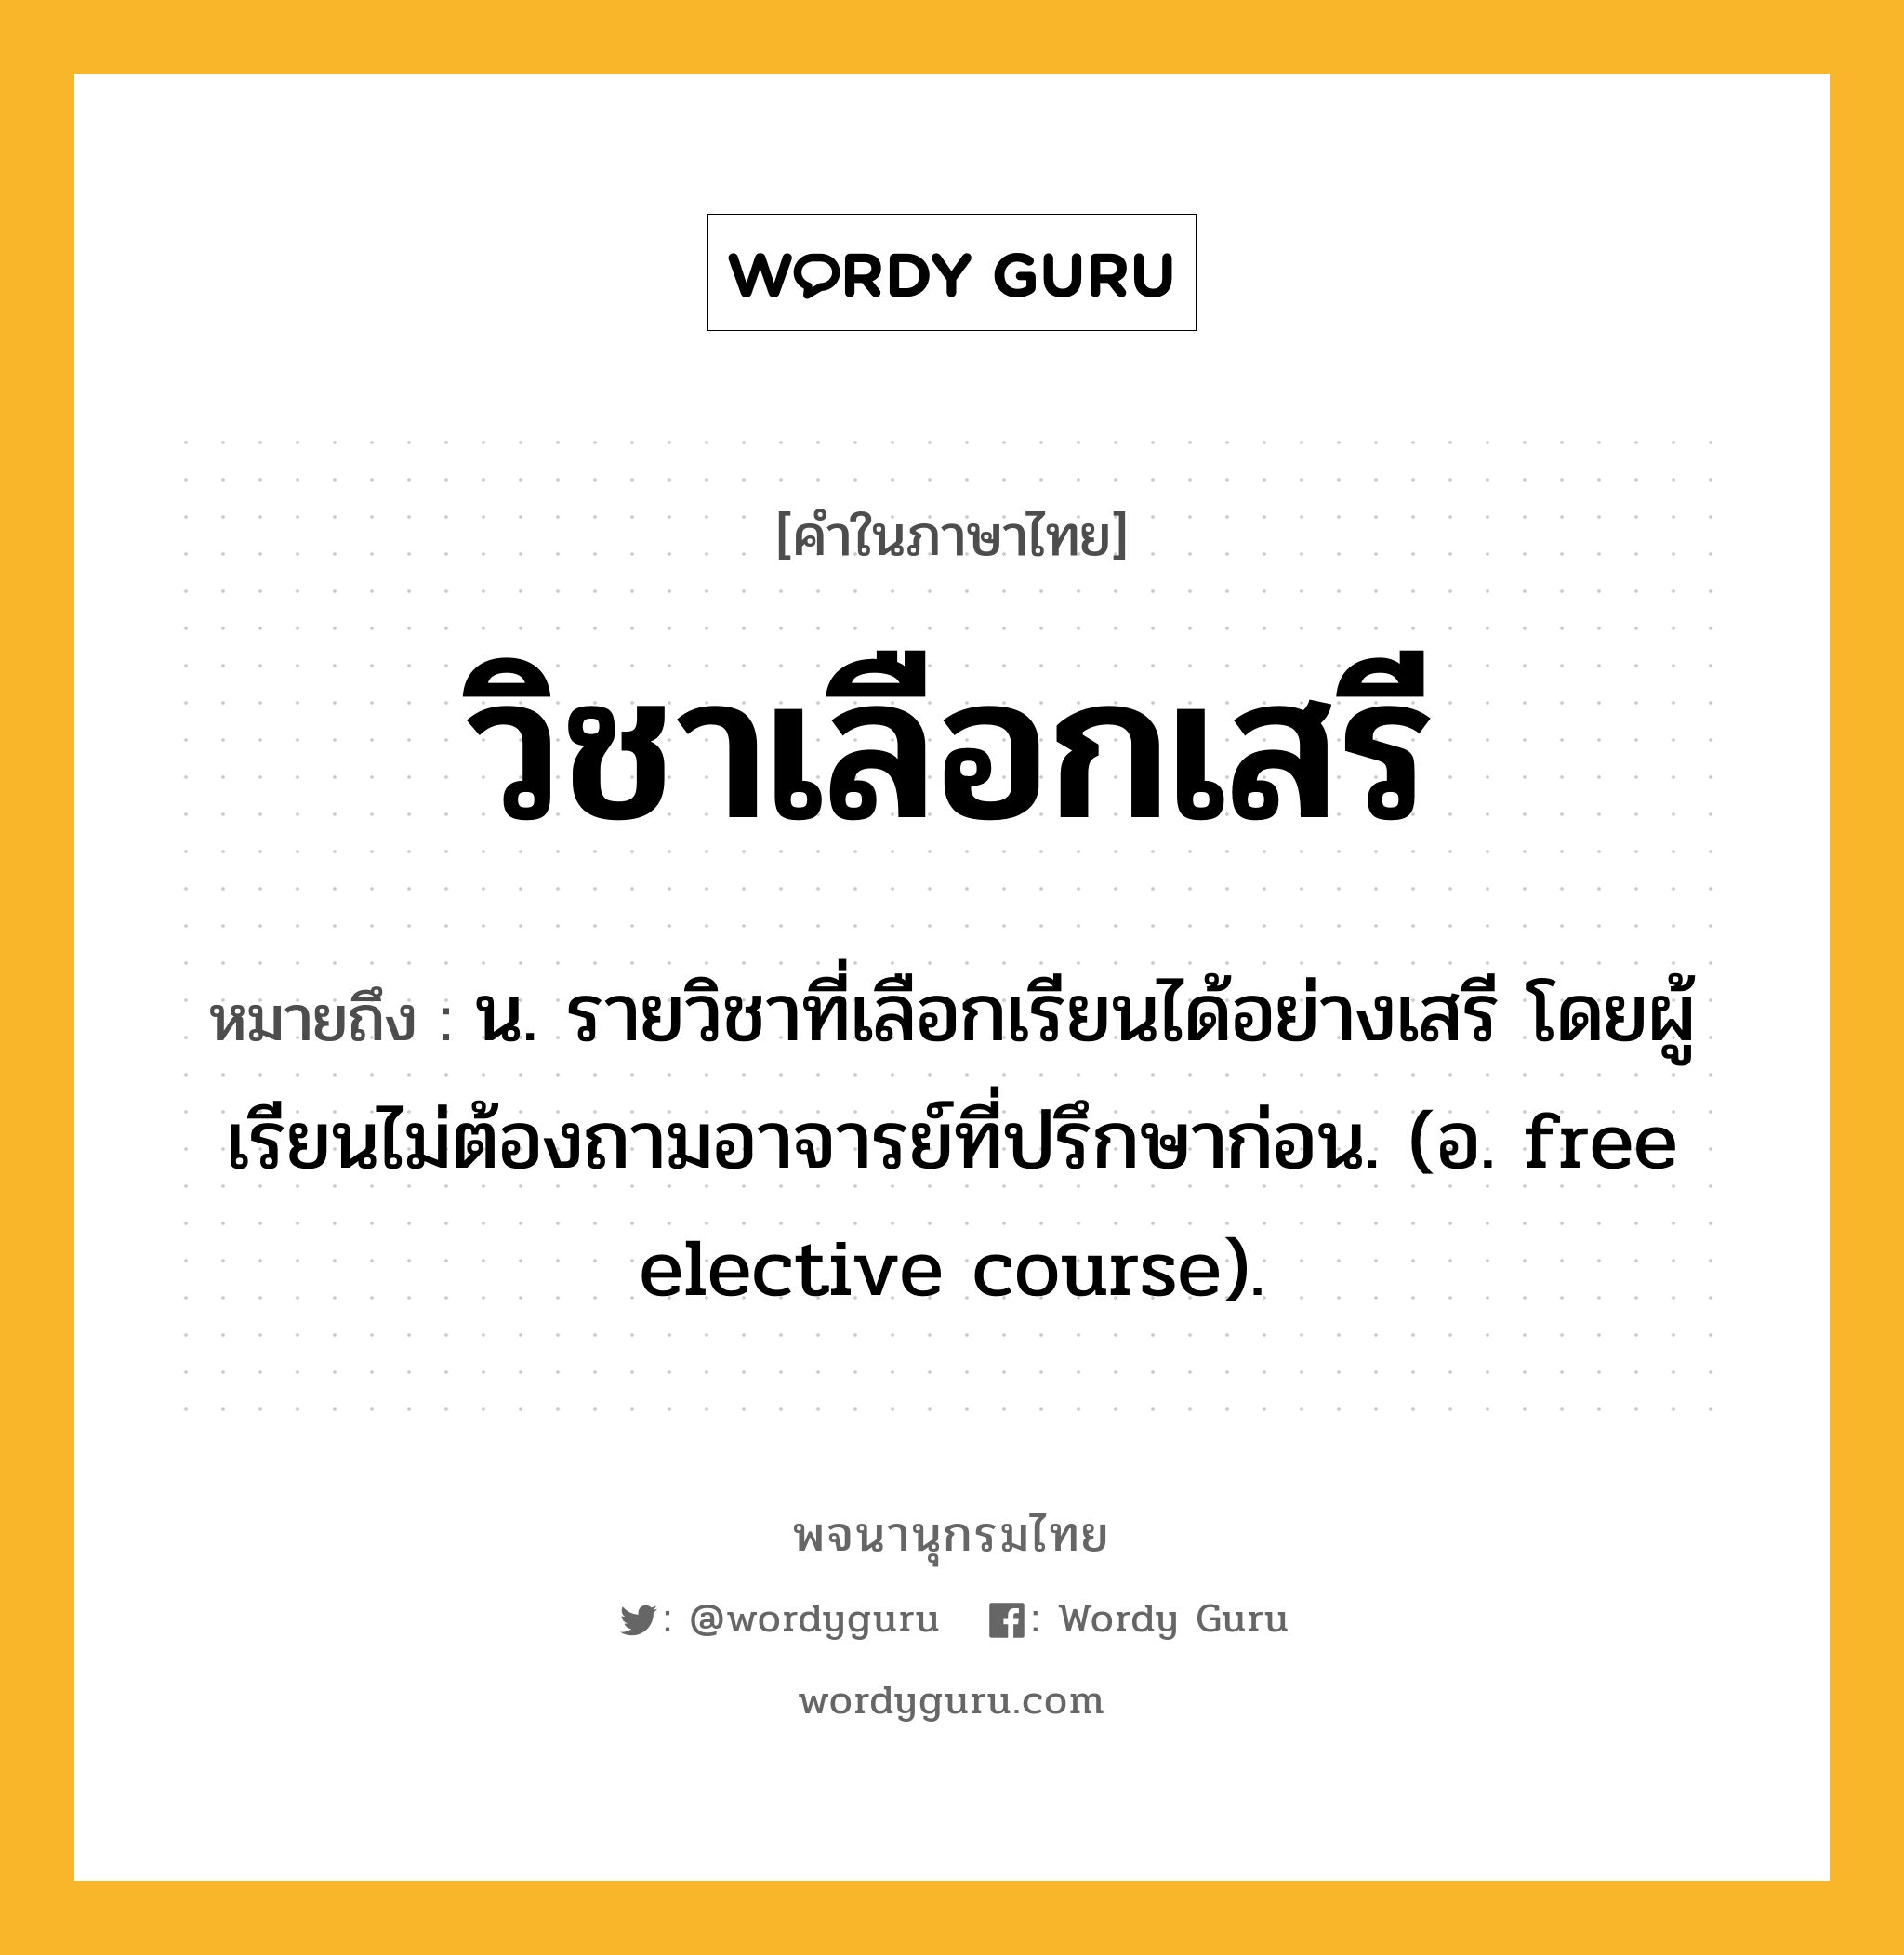 วิชาเลือกเสรี ความหมาย หมายถึงอะไร?, คำในภาษาไทย วิชาเลือกเสรี หมายถึง น. รายวิชาที่เลือกเรียนได้อย่างเสรี โดยผู้เรียนไม่ต้องถามอาจารย์ที่ปรึกษาก่อน. (อ. free elective course).